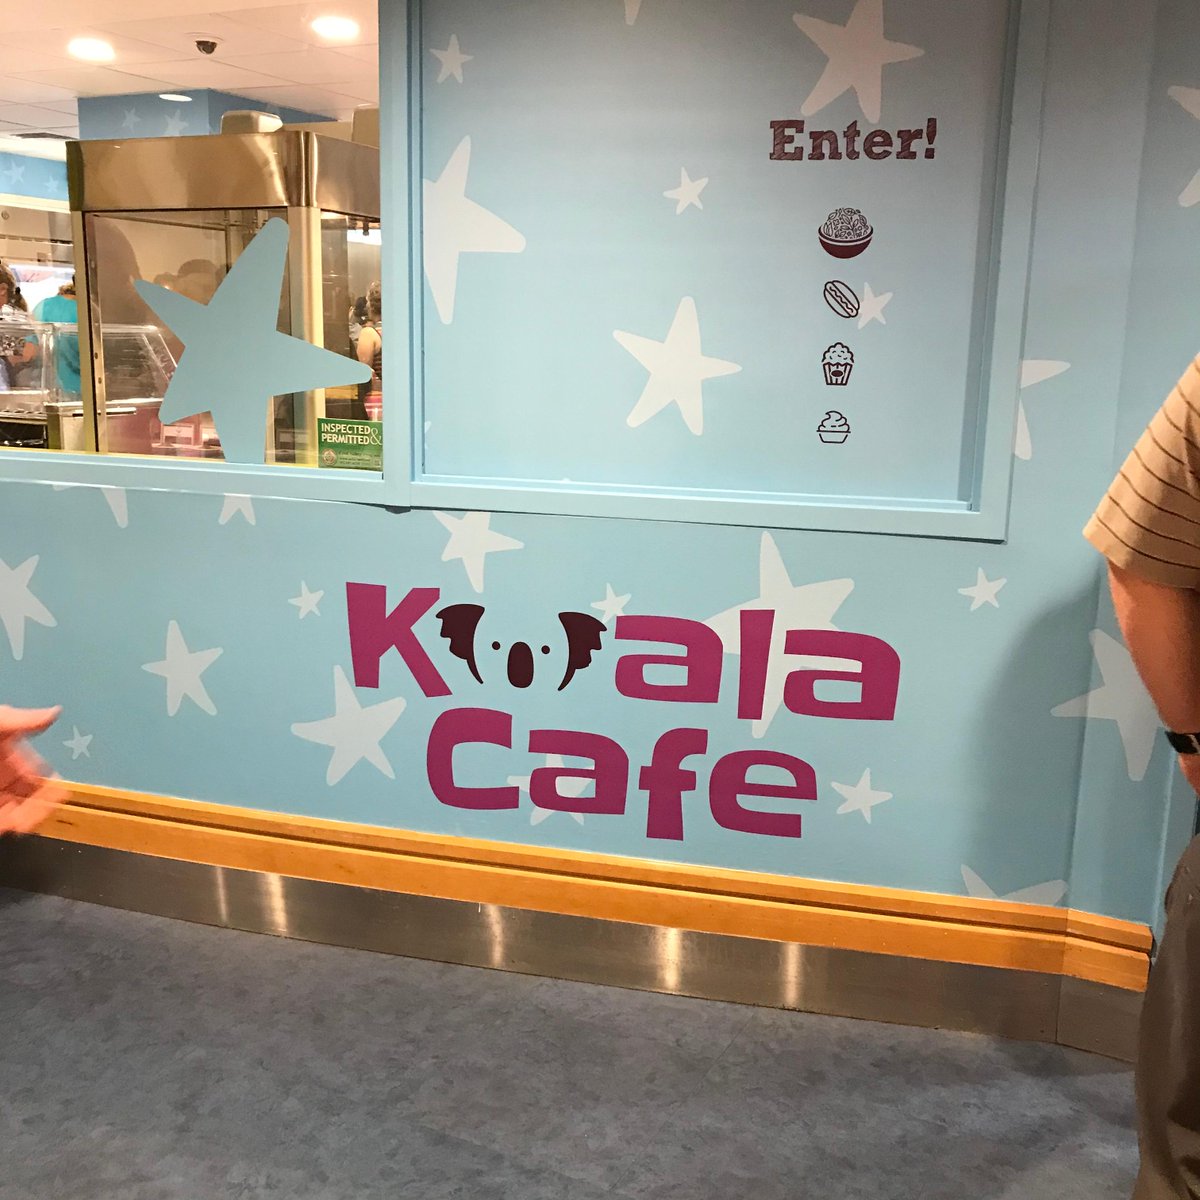 Upmc Children S Hospital Of Pittsburgh On Twitter The Koala Cafe